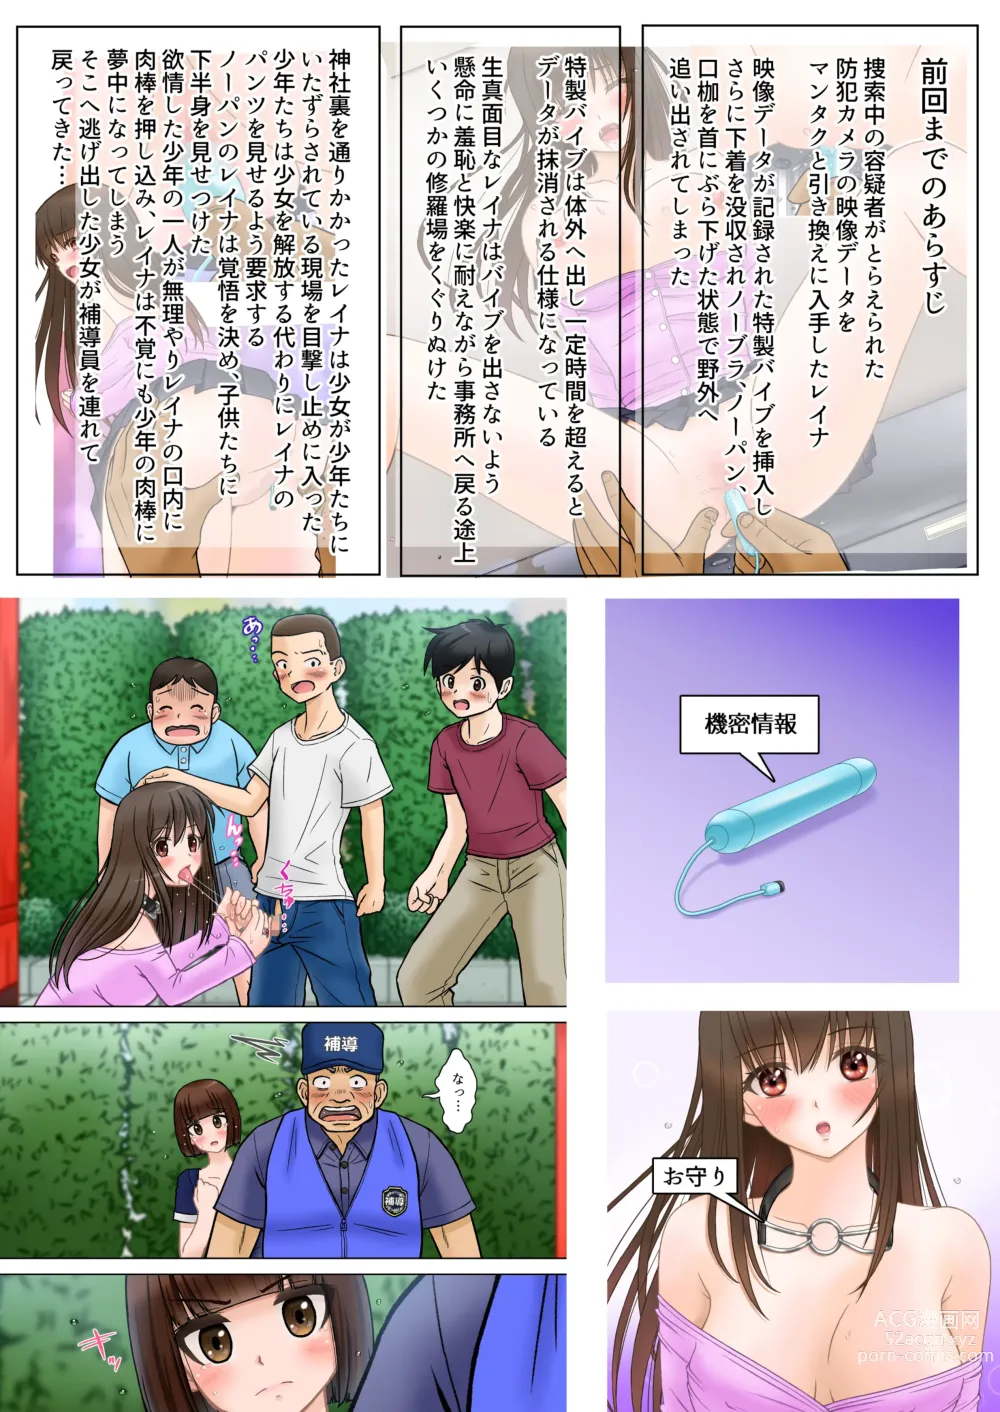 Page 2 of doujinshi Madou Keisatsu Reina Chijoku no Otsukai Stage 2-4